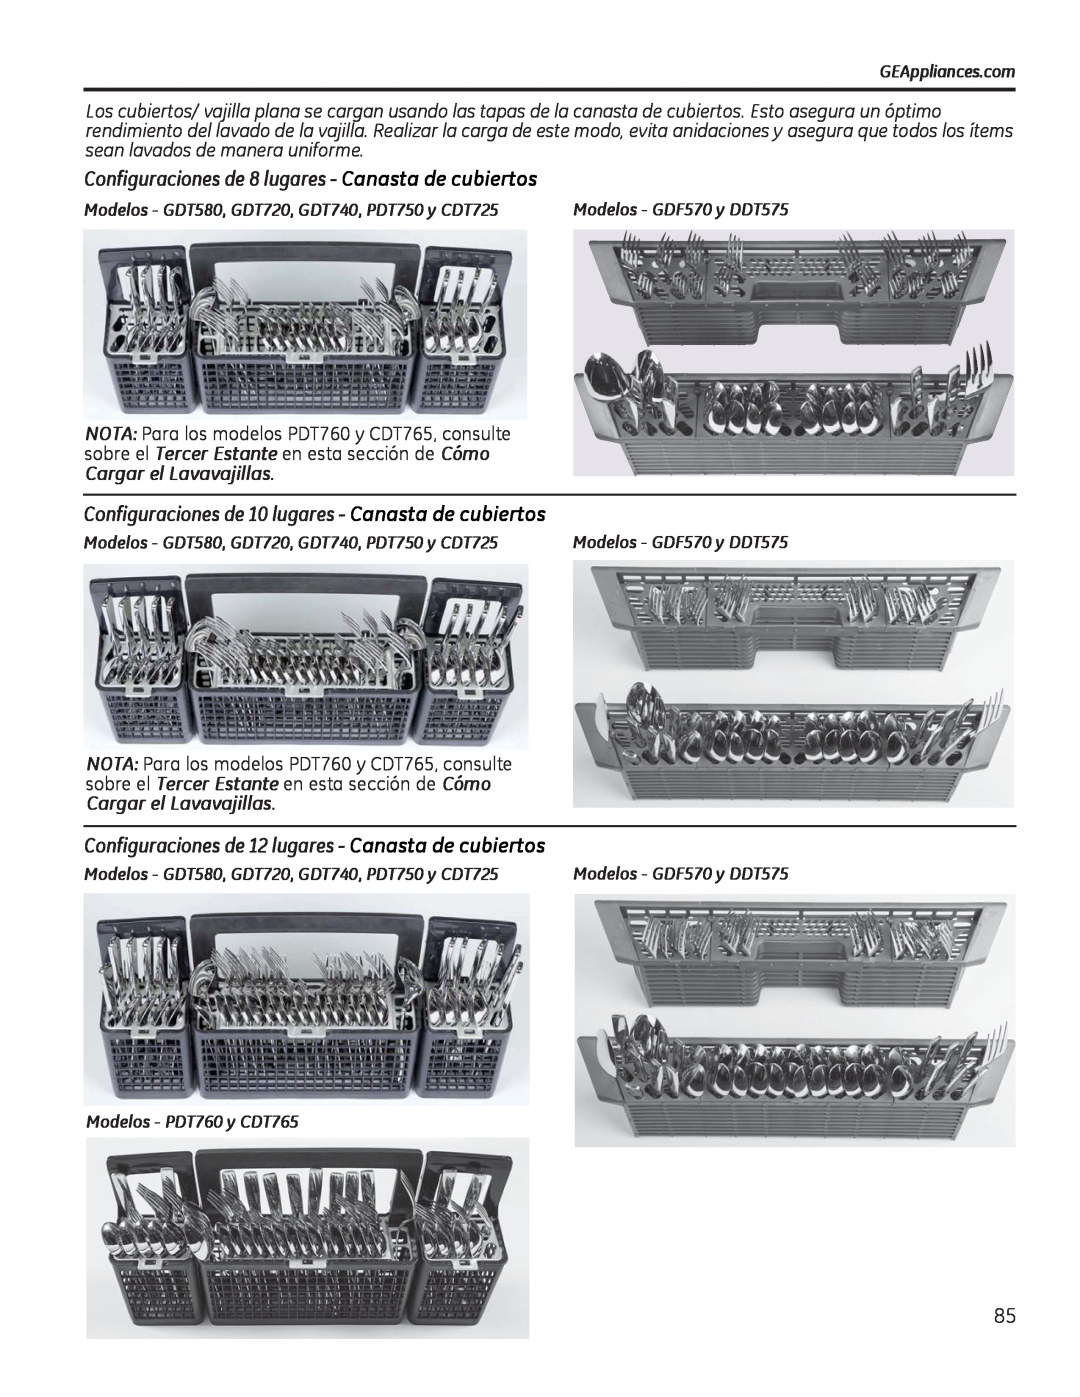 GE PDT750-760 Configuraciones de 8 lugares - Canasta de cubiertos, Configuraciones de 10 lugares - Canasta de cubiertos 